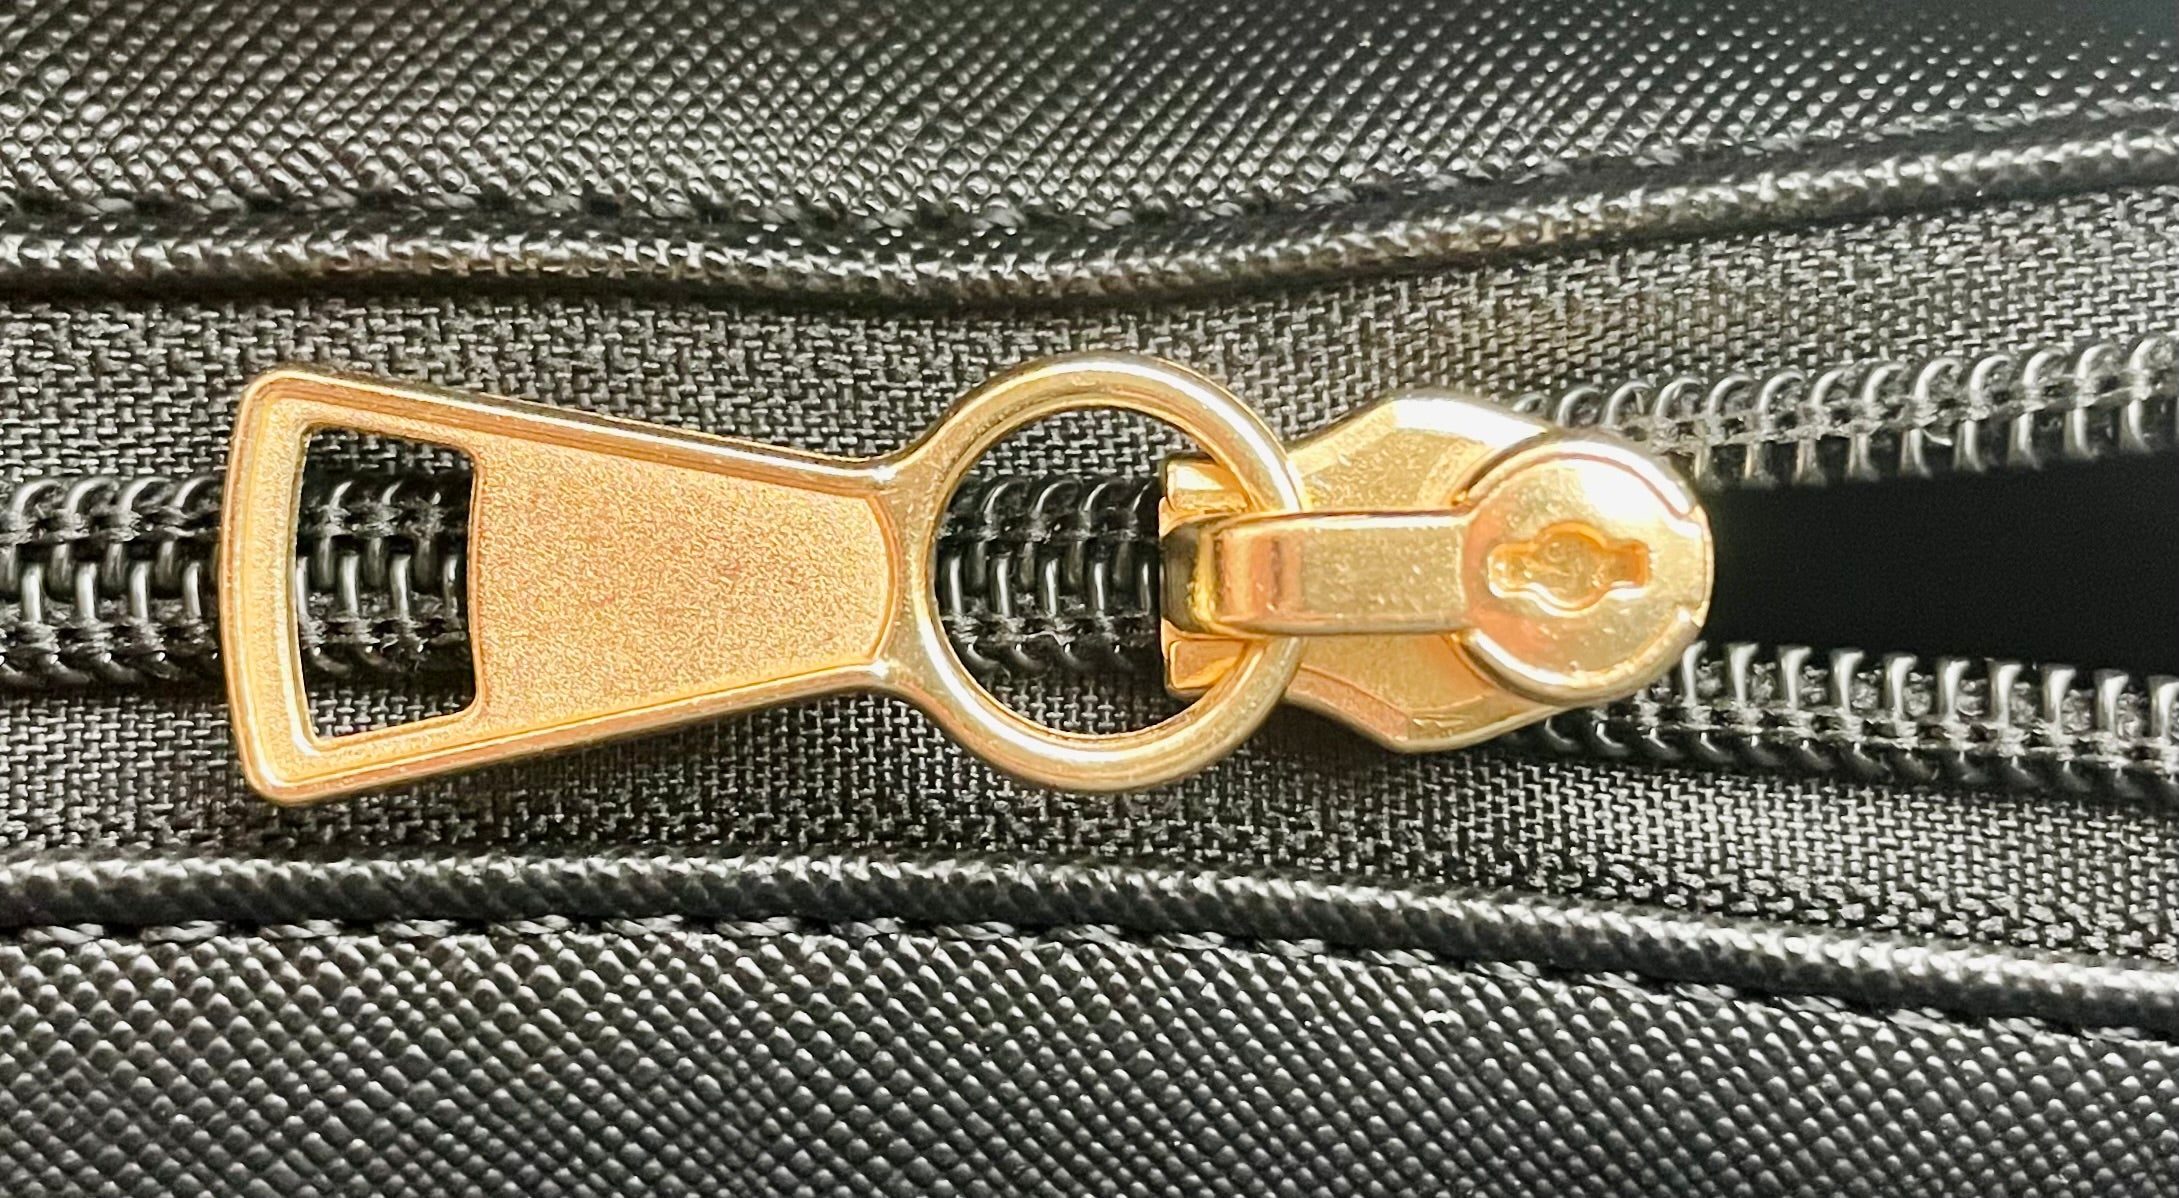 Vaultz Locking Zipper Pouch, 5 x 8 Inches, Pink (VZ00471